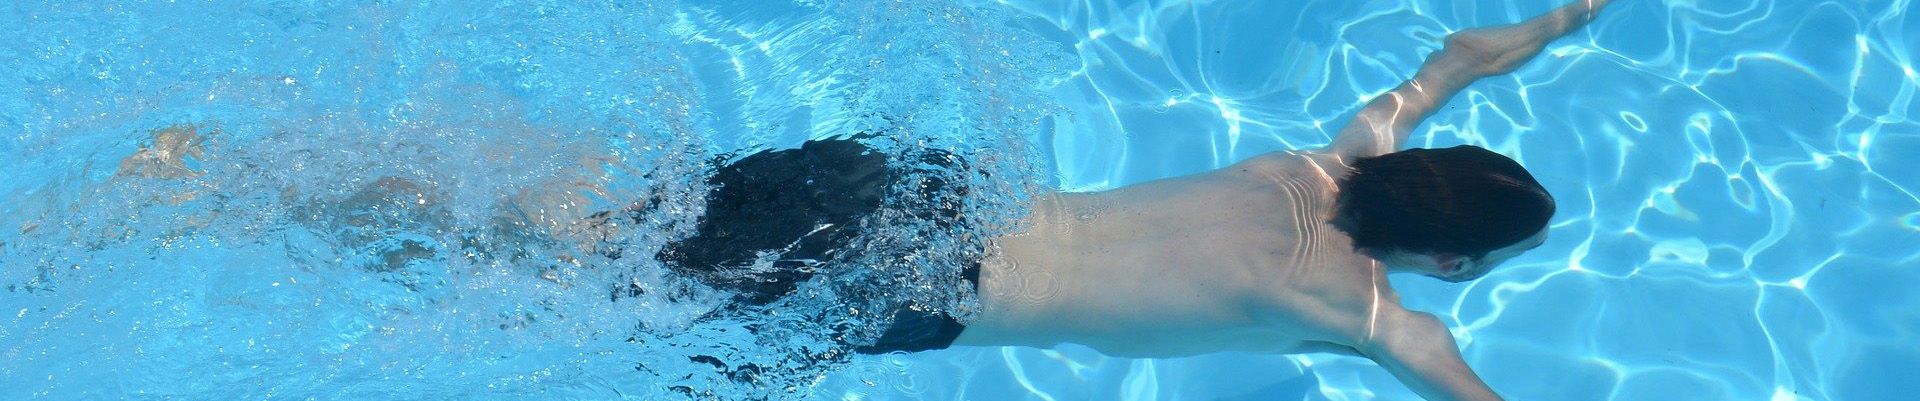 Schwimmen (Image by Ben Kerckx from Pixabay )